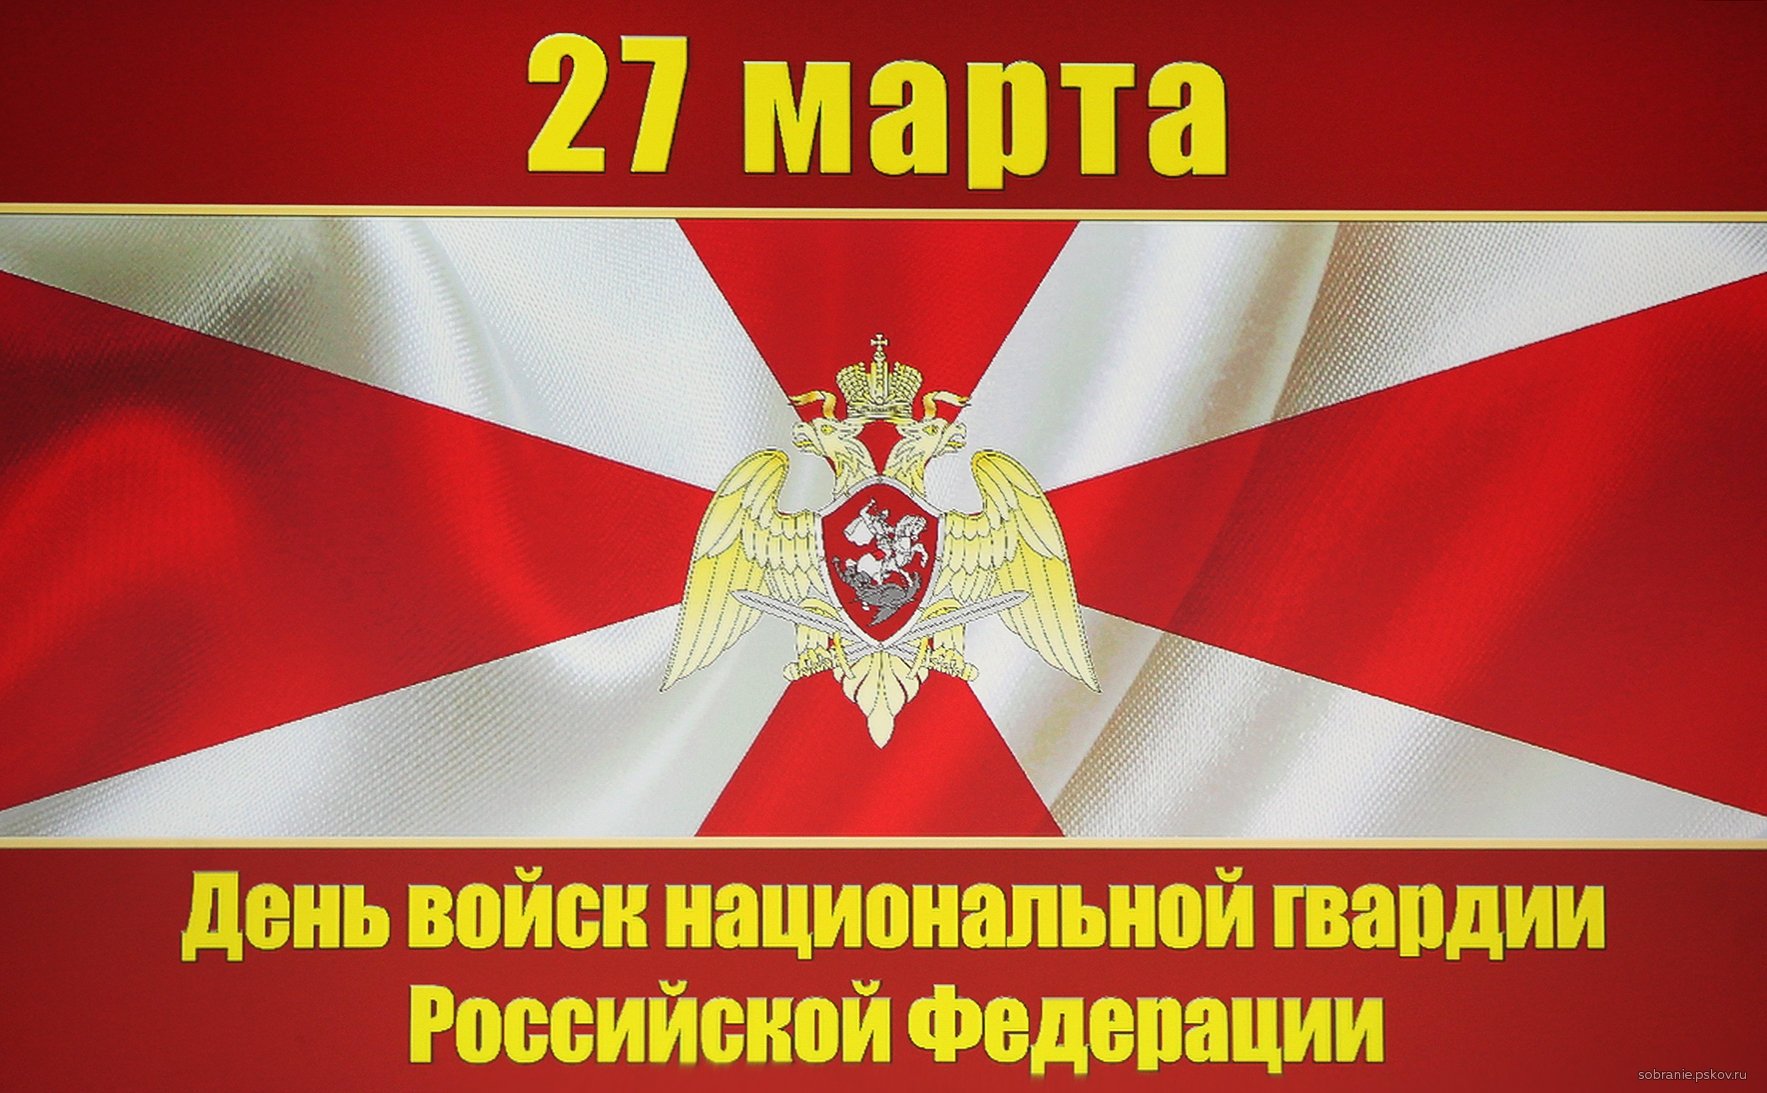 27 Марта день войск национальной гвардии Российской Федерации